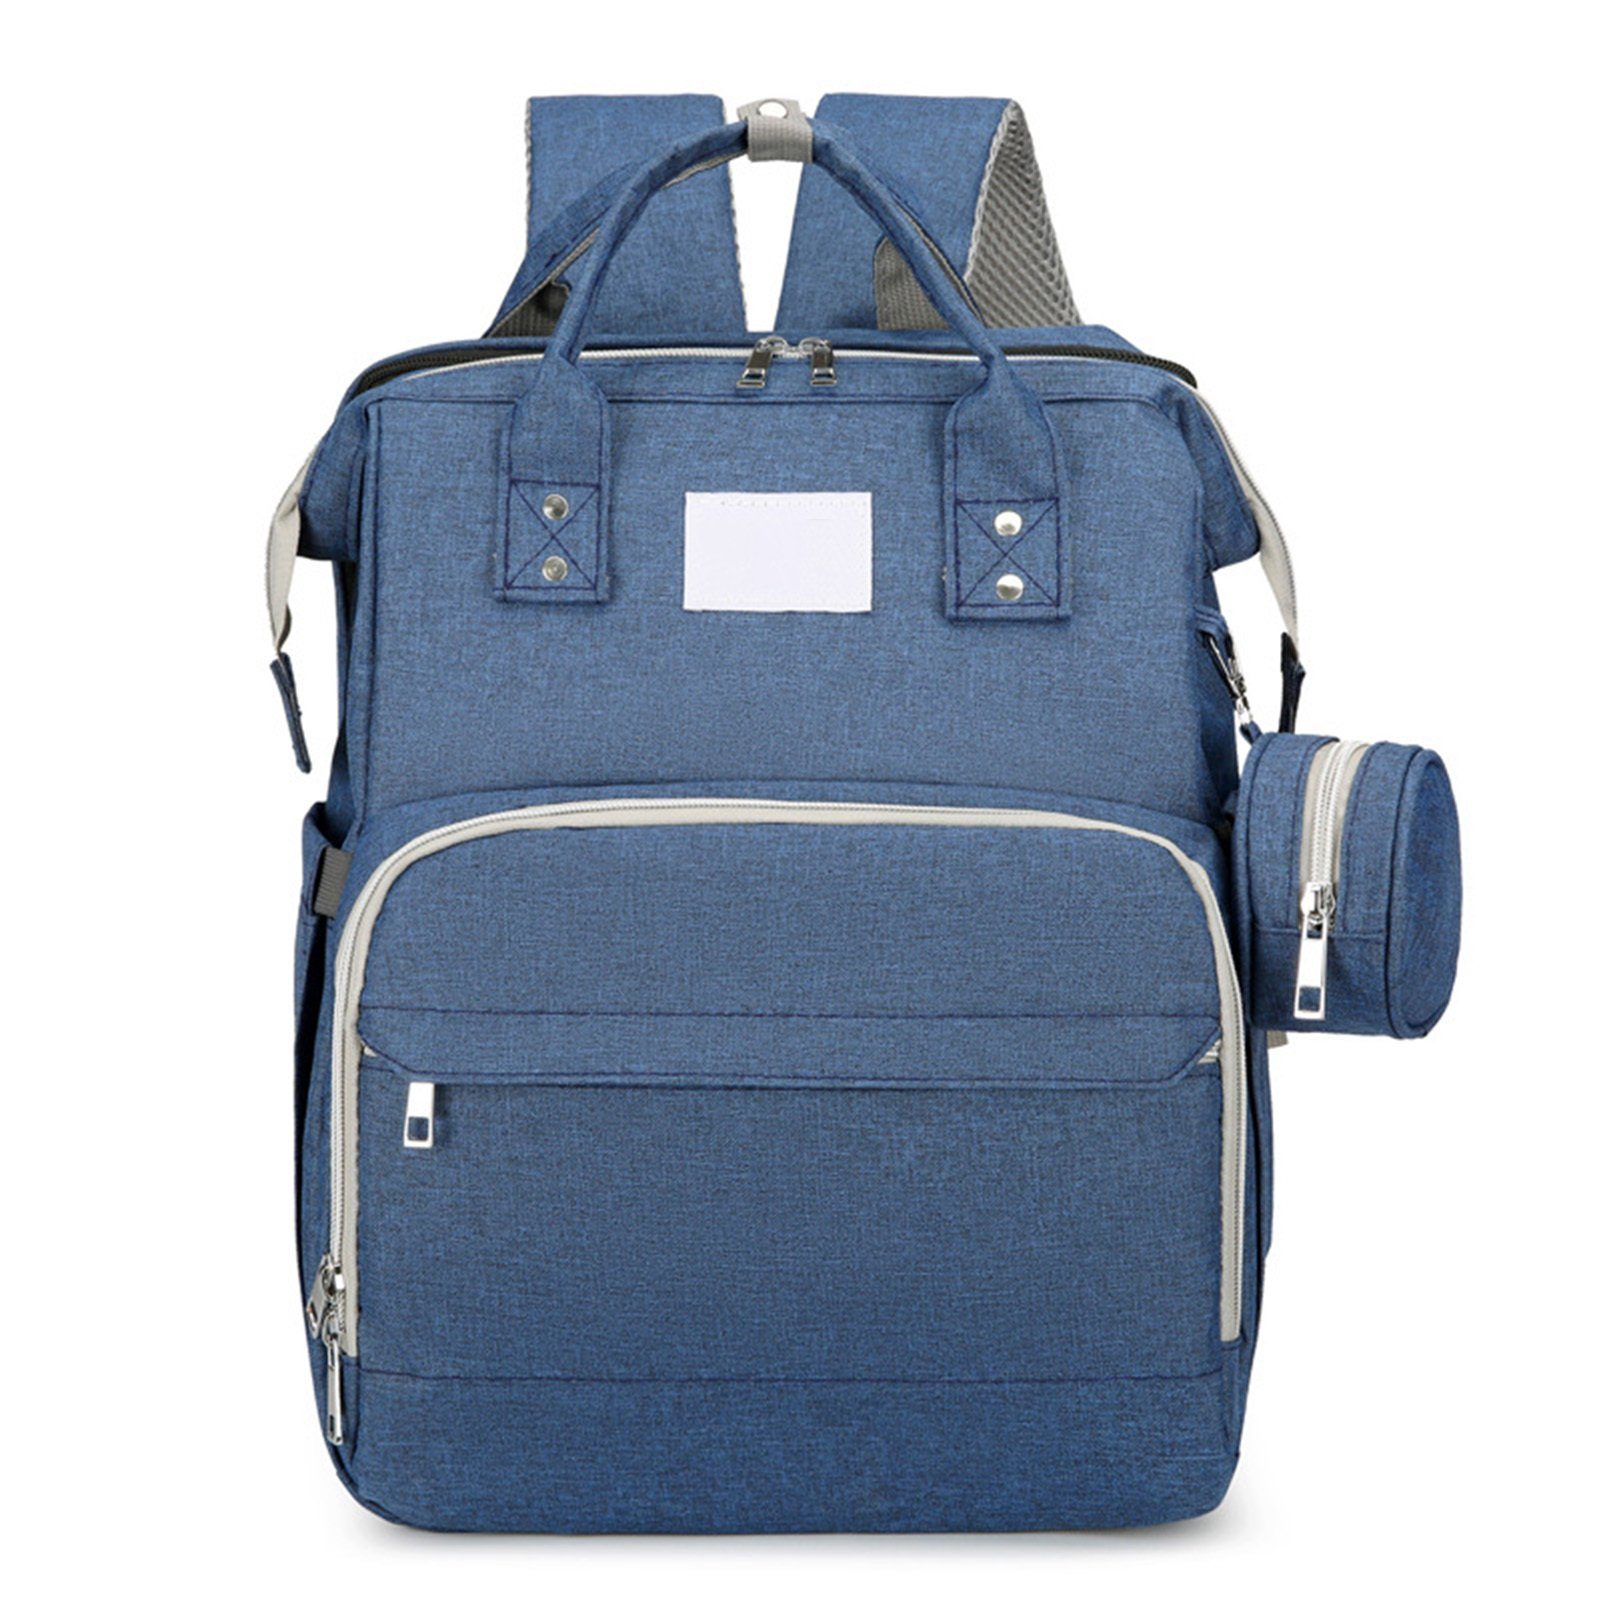 Blusmart Wickeltasche Tragbare Wickeltasche Mit Reißverschluss, Mehrzweck-Mutterrucksack blue